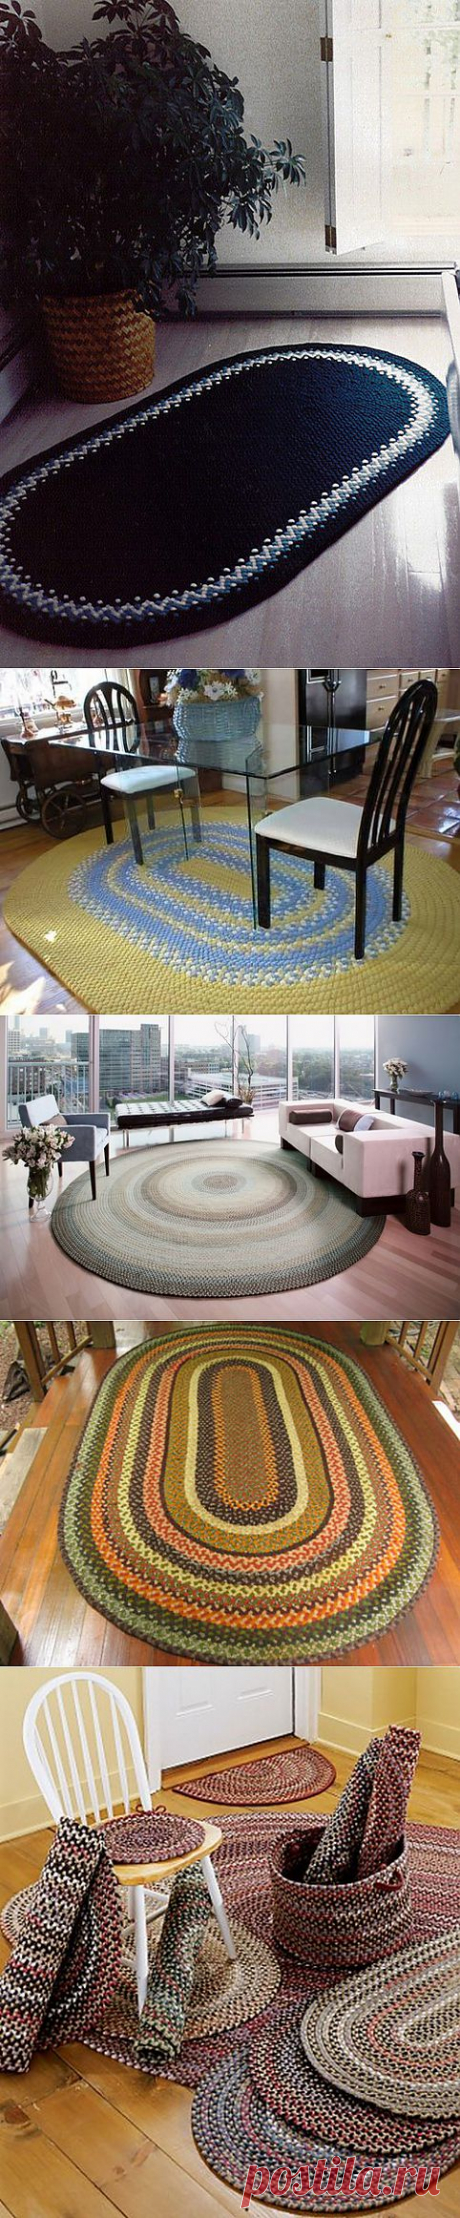 Плетеные коврики в домашнем интерьере.